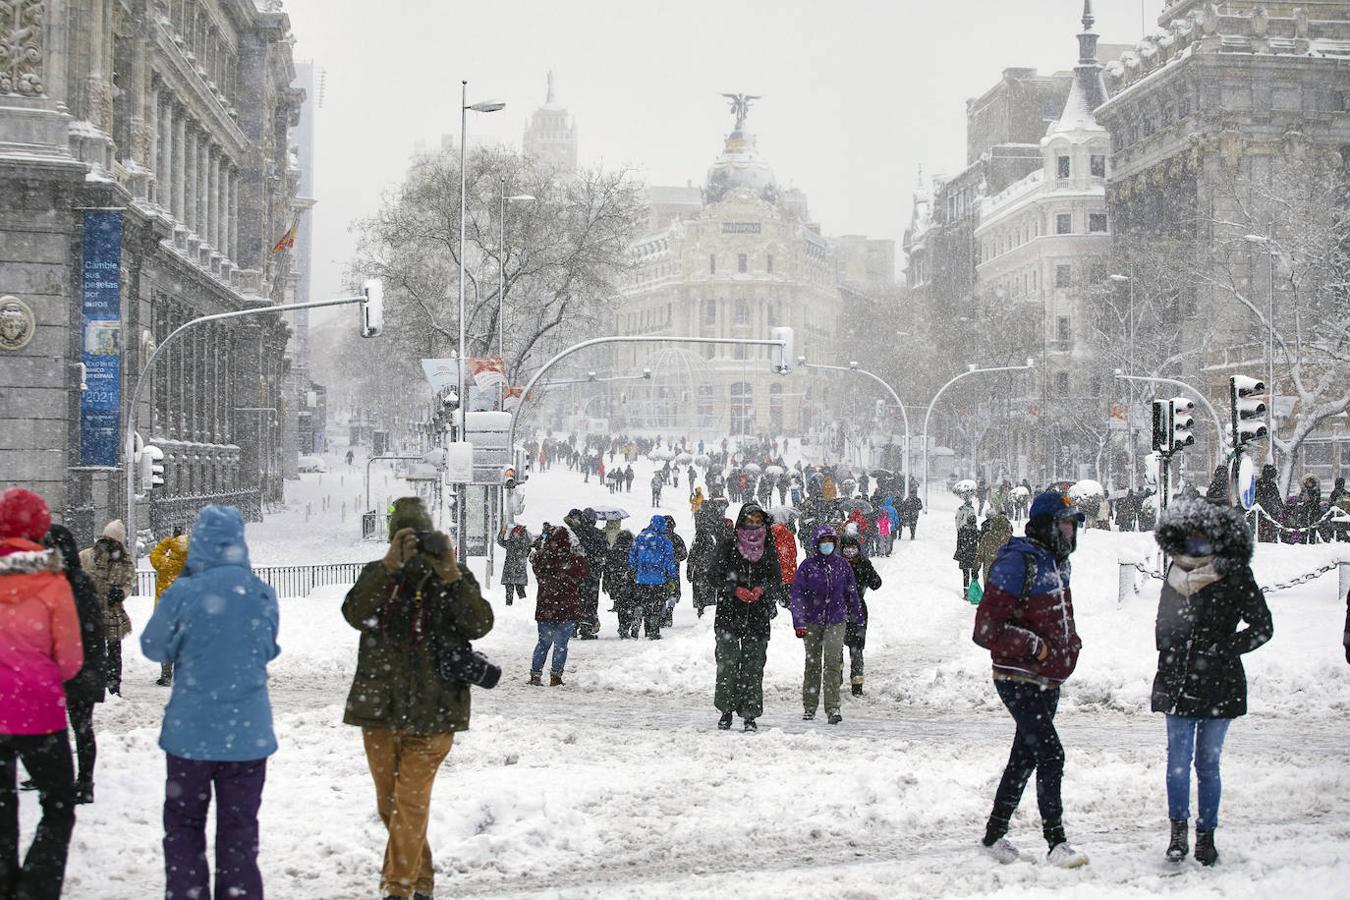 Los madrileños se echan a la calle. Niños y mayores salieron de su casa a ver la extraordinaria escena. Para muchos, es la mayor nevada que han visto nunca.